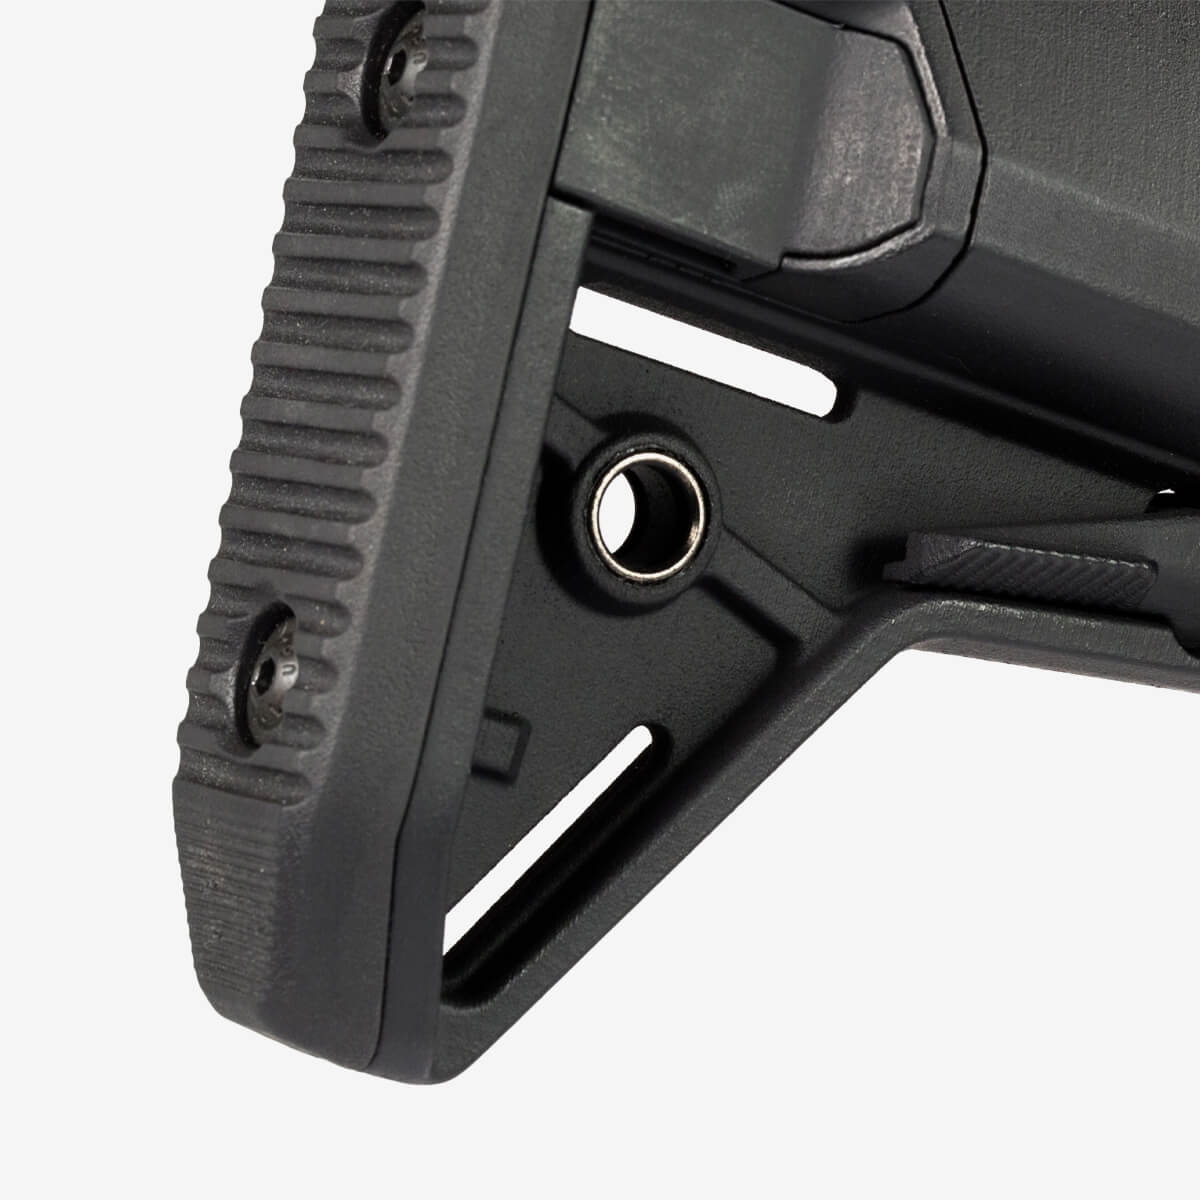 MOE® SL-S™ Carbine Stock – Mil-Spec Black